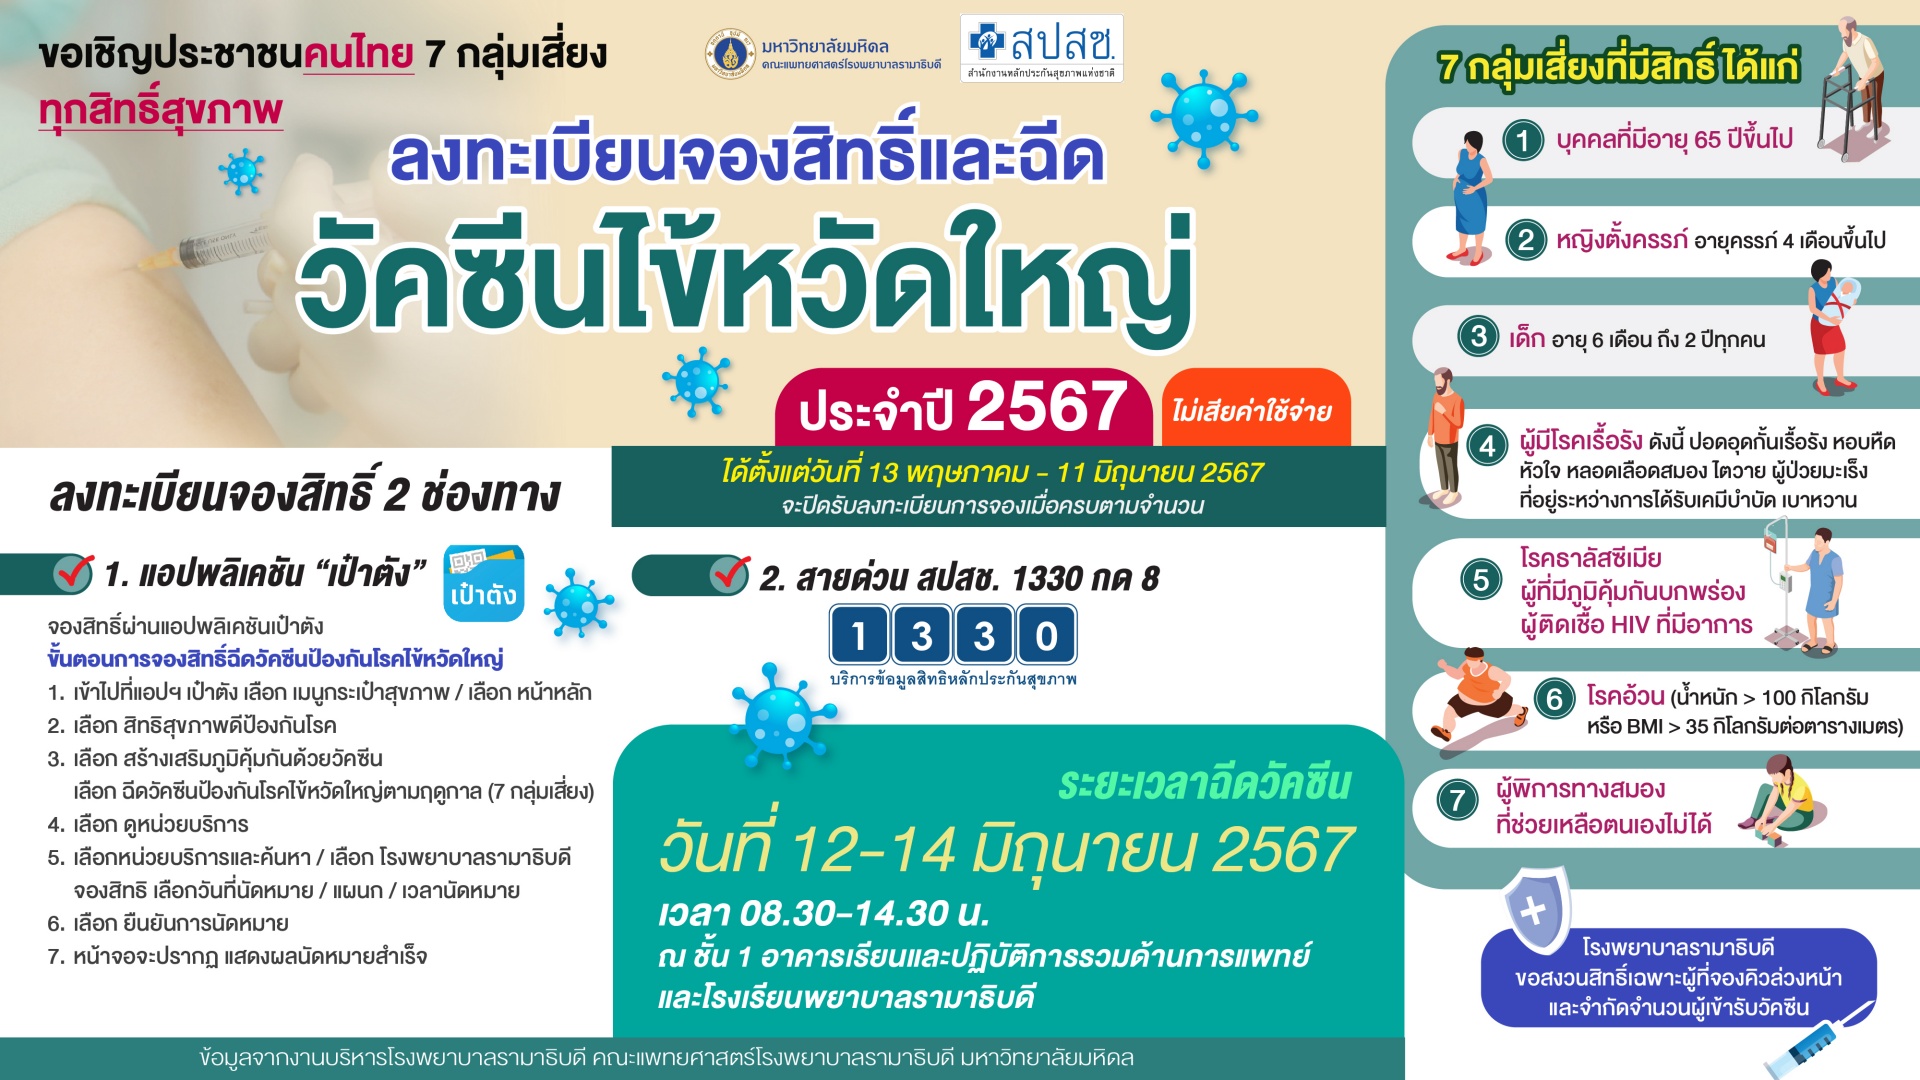 ขอเชิญประชาชนคนไทย 7 กลุ่มเสี่ยง ทุกสิทธิ์สุขภาพ ลงทะเบียนจองสิทธิ์และฉีดวัคซีนไข้หวัดใหญ่ประจำปี 2567 (ไม่เสียค่าใช้จ่าย)